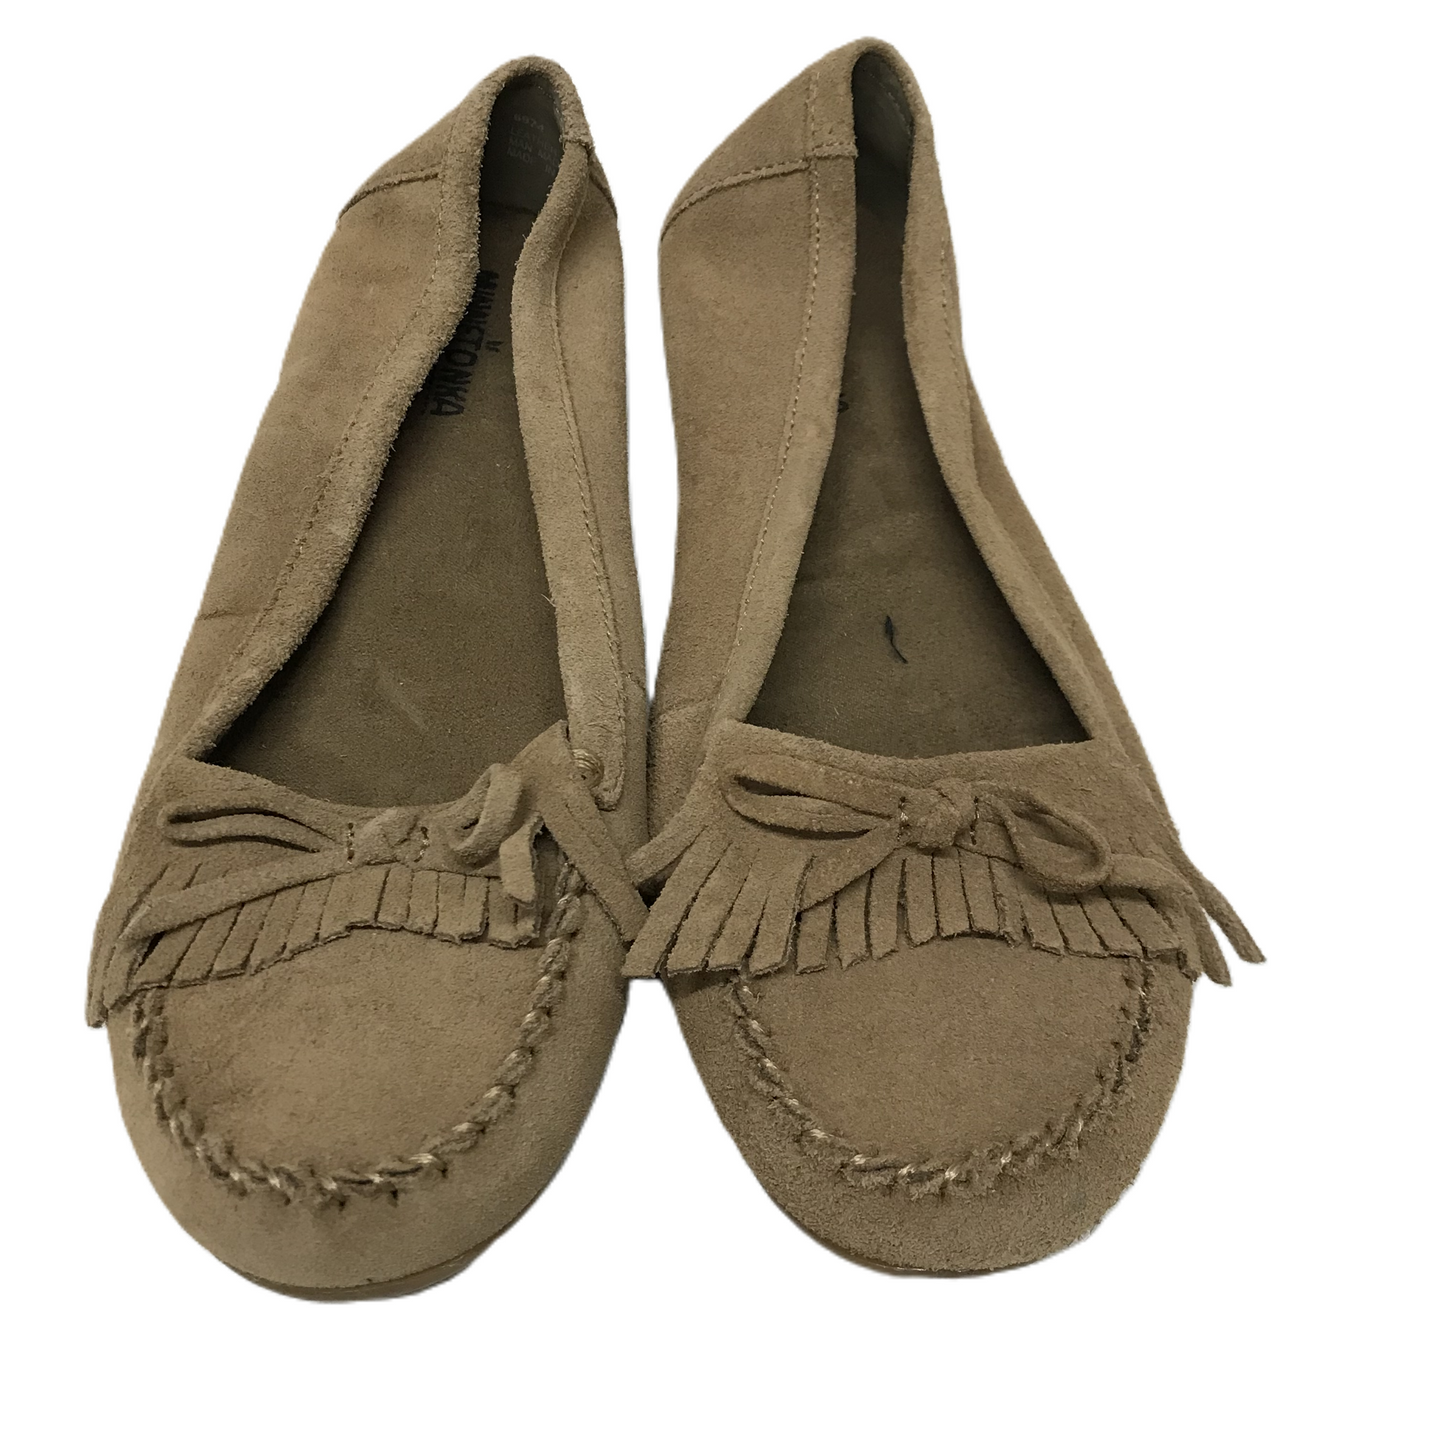 Tan Shoes Flats By Minnetonka, Size: 8.5